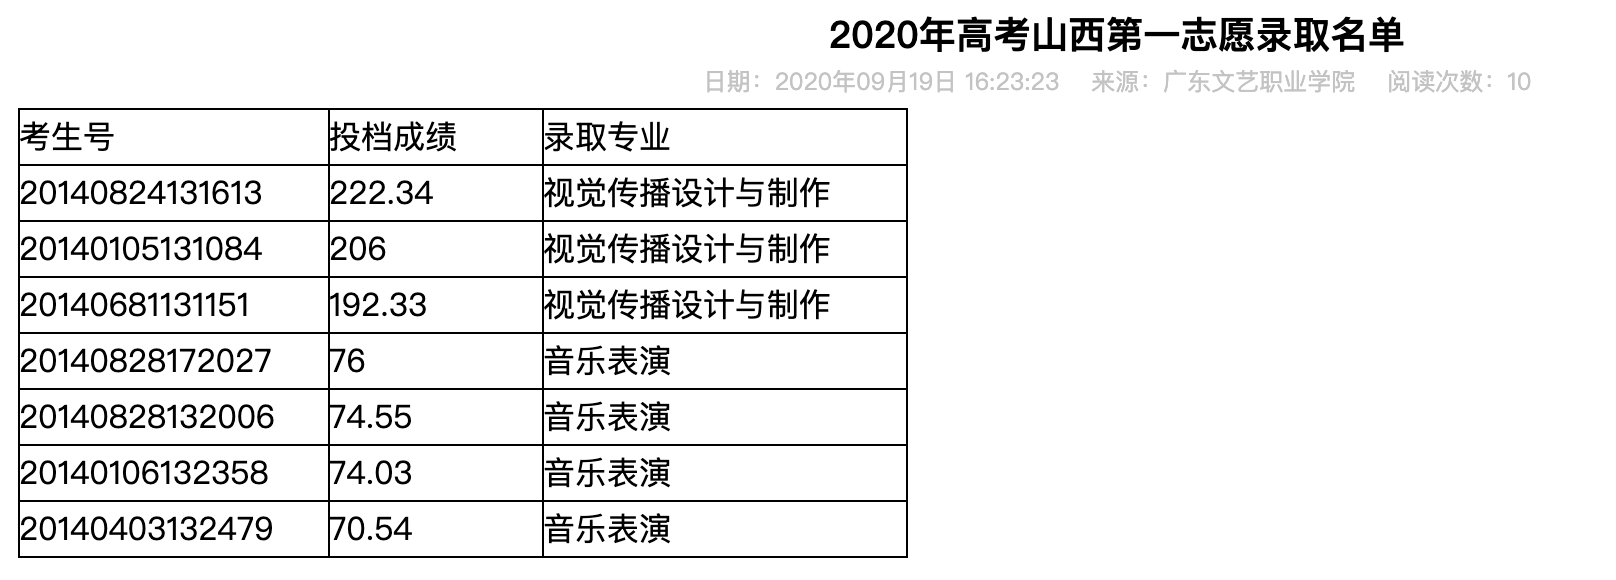 广东文艺职业学院2020年高考山西第一志愿录取名单